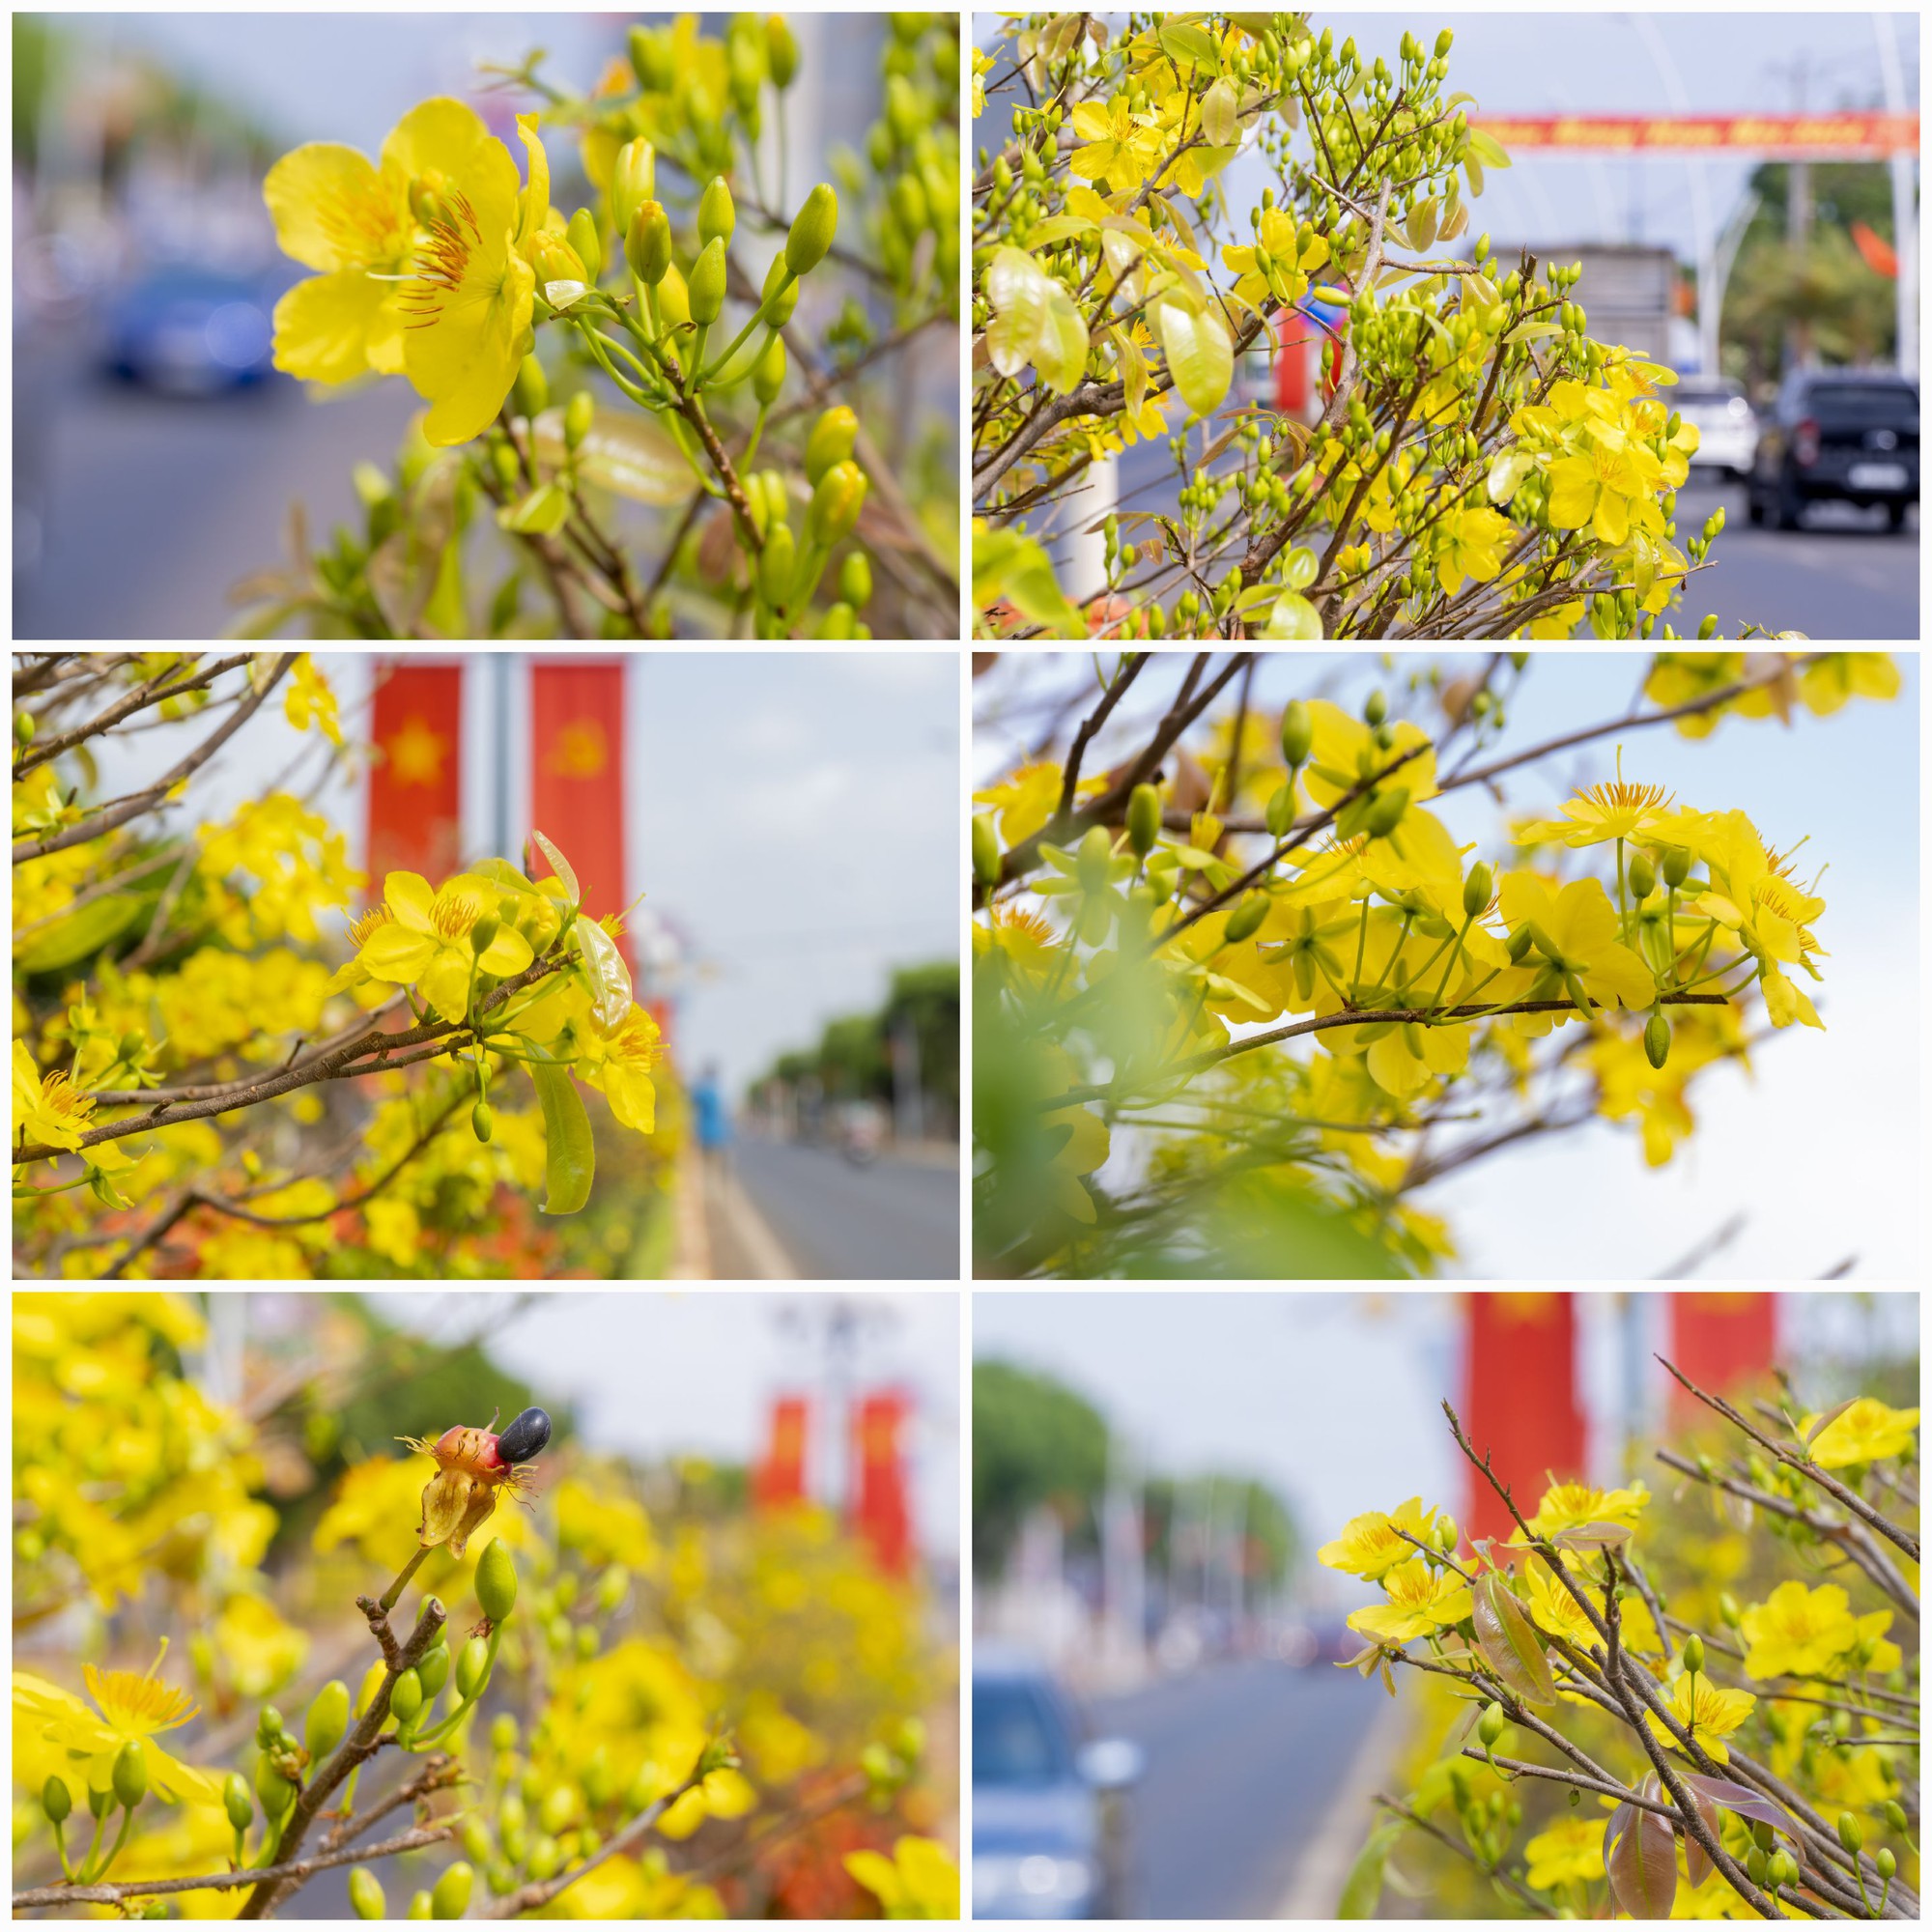 Hơn 1.000 cây mai vàng làm nên con đường hoa đẹp mê mẩn ở một thị trấn của Bà Rịa-Vũng Tàu- Ảnh 11.